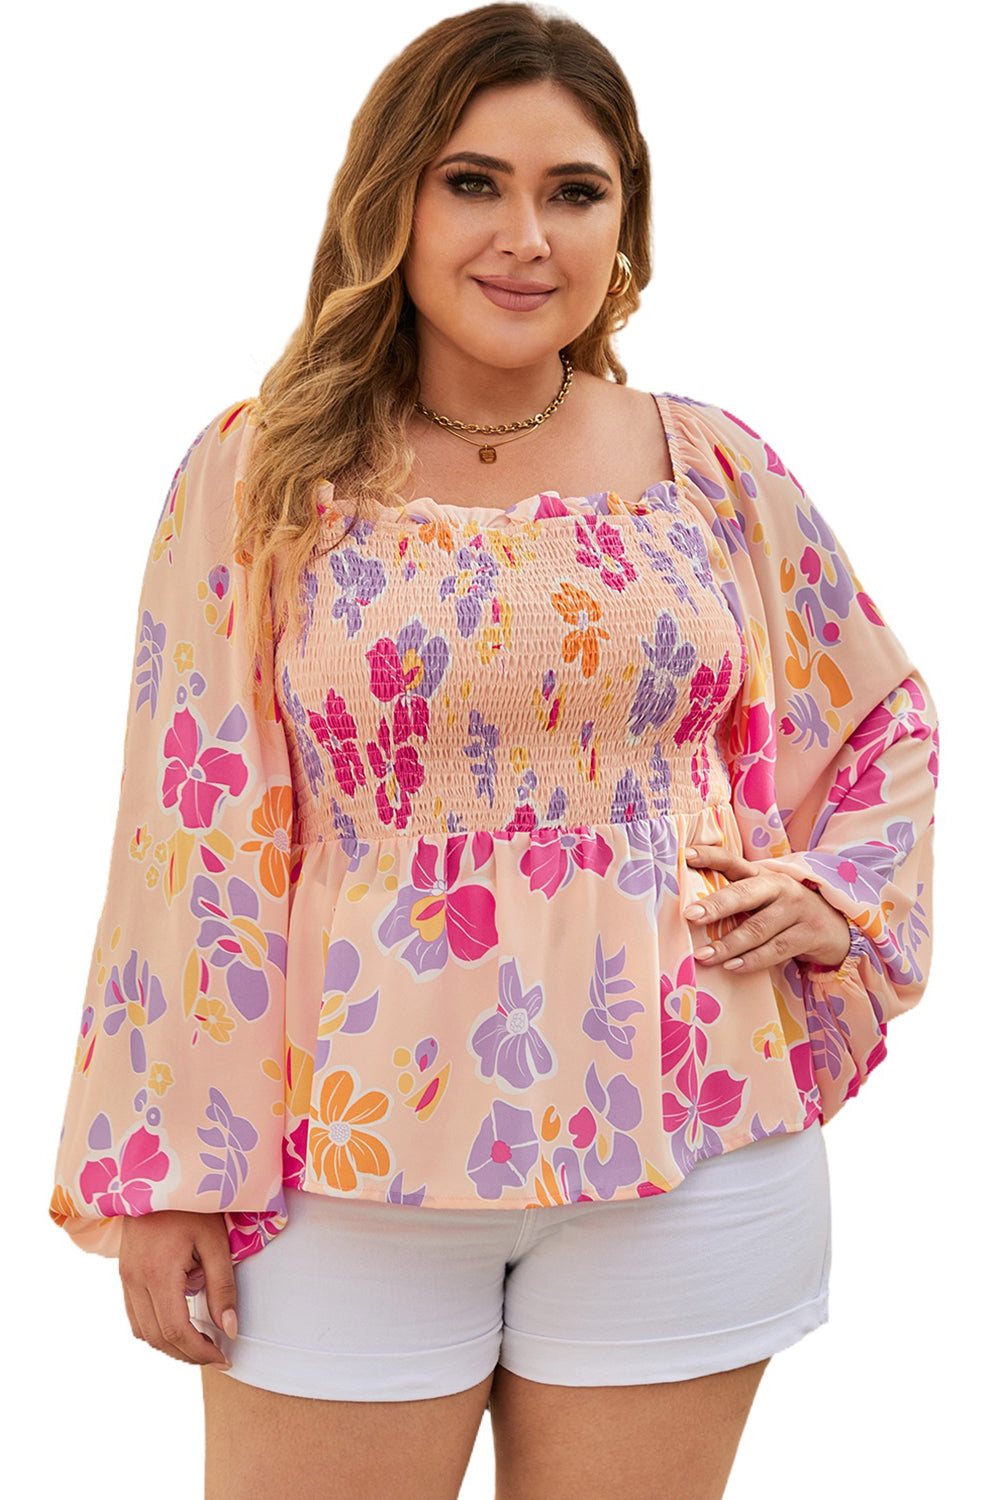 Rožnata majica s cvetličnimi napihnjenimi rokavi in ​​peplum v veliki velikosti